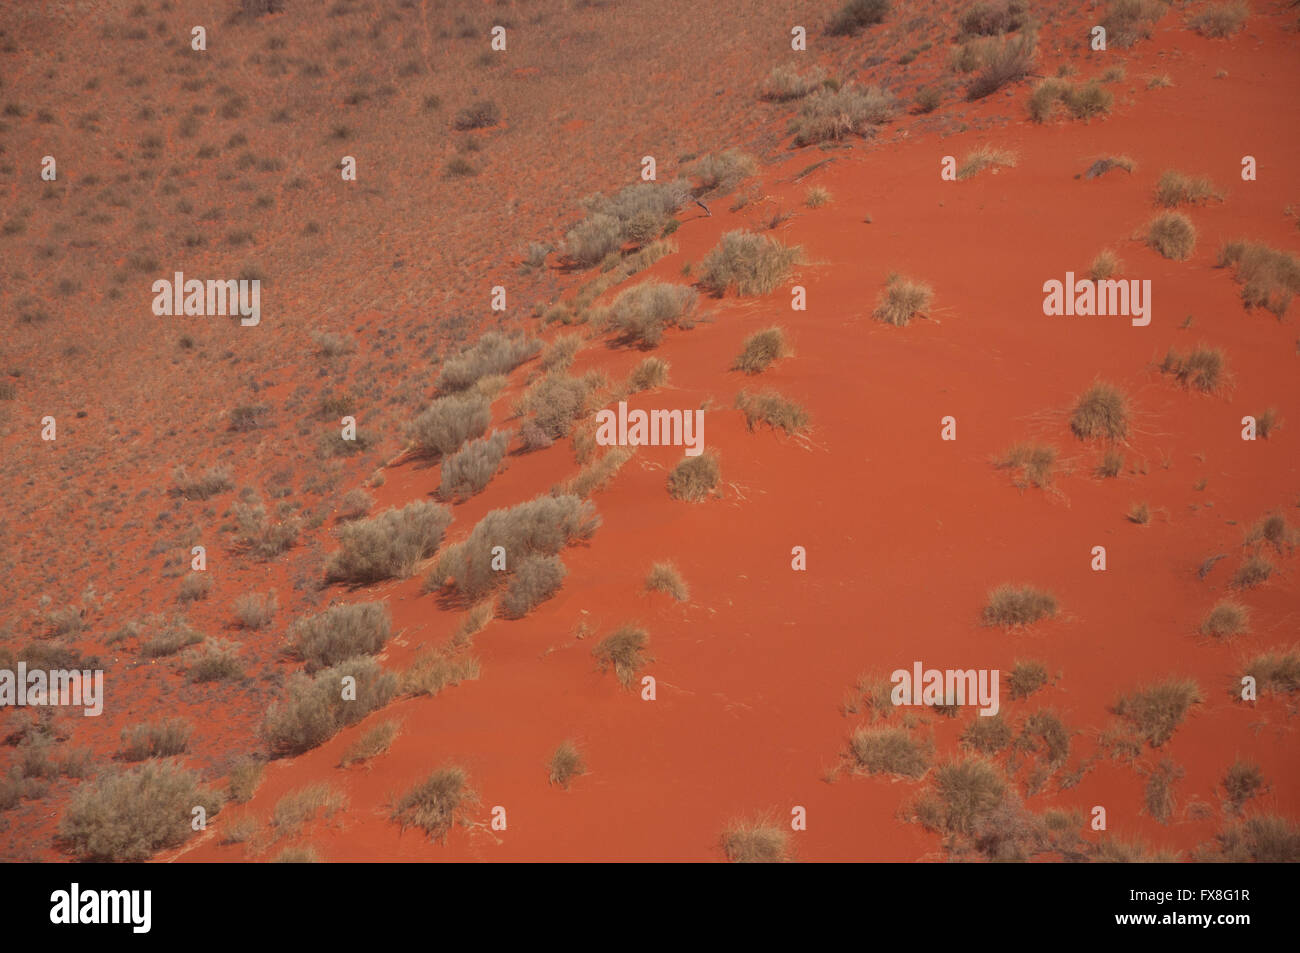 De sable rouge du Kalahari, prise depuis un hélicoptère sur un vol de convoyage entre Upington et Keetmanshoop. Banque D'Images